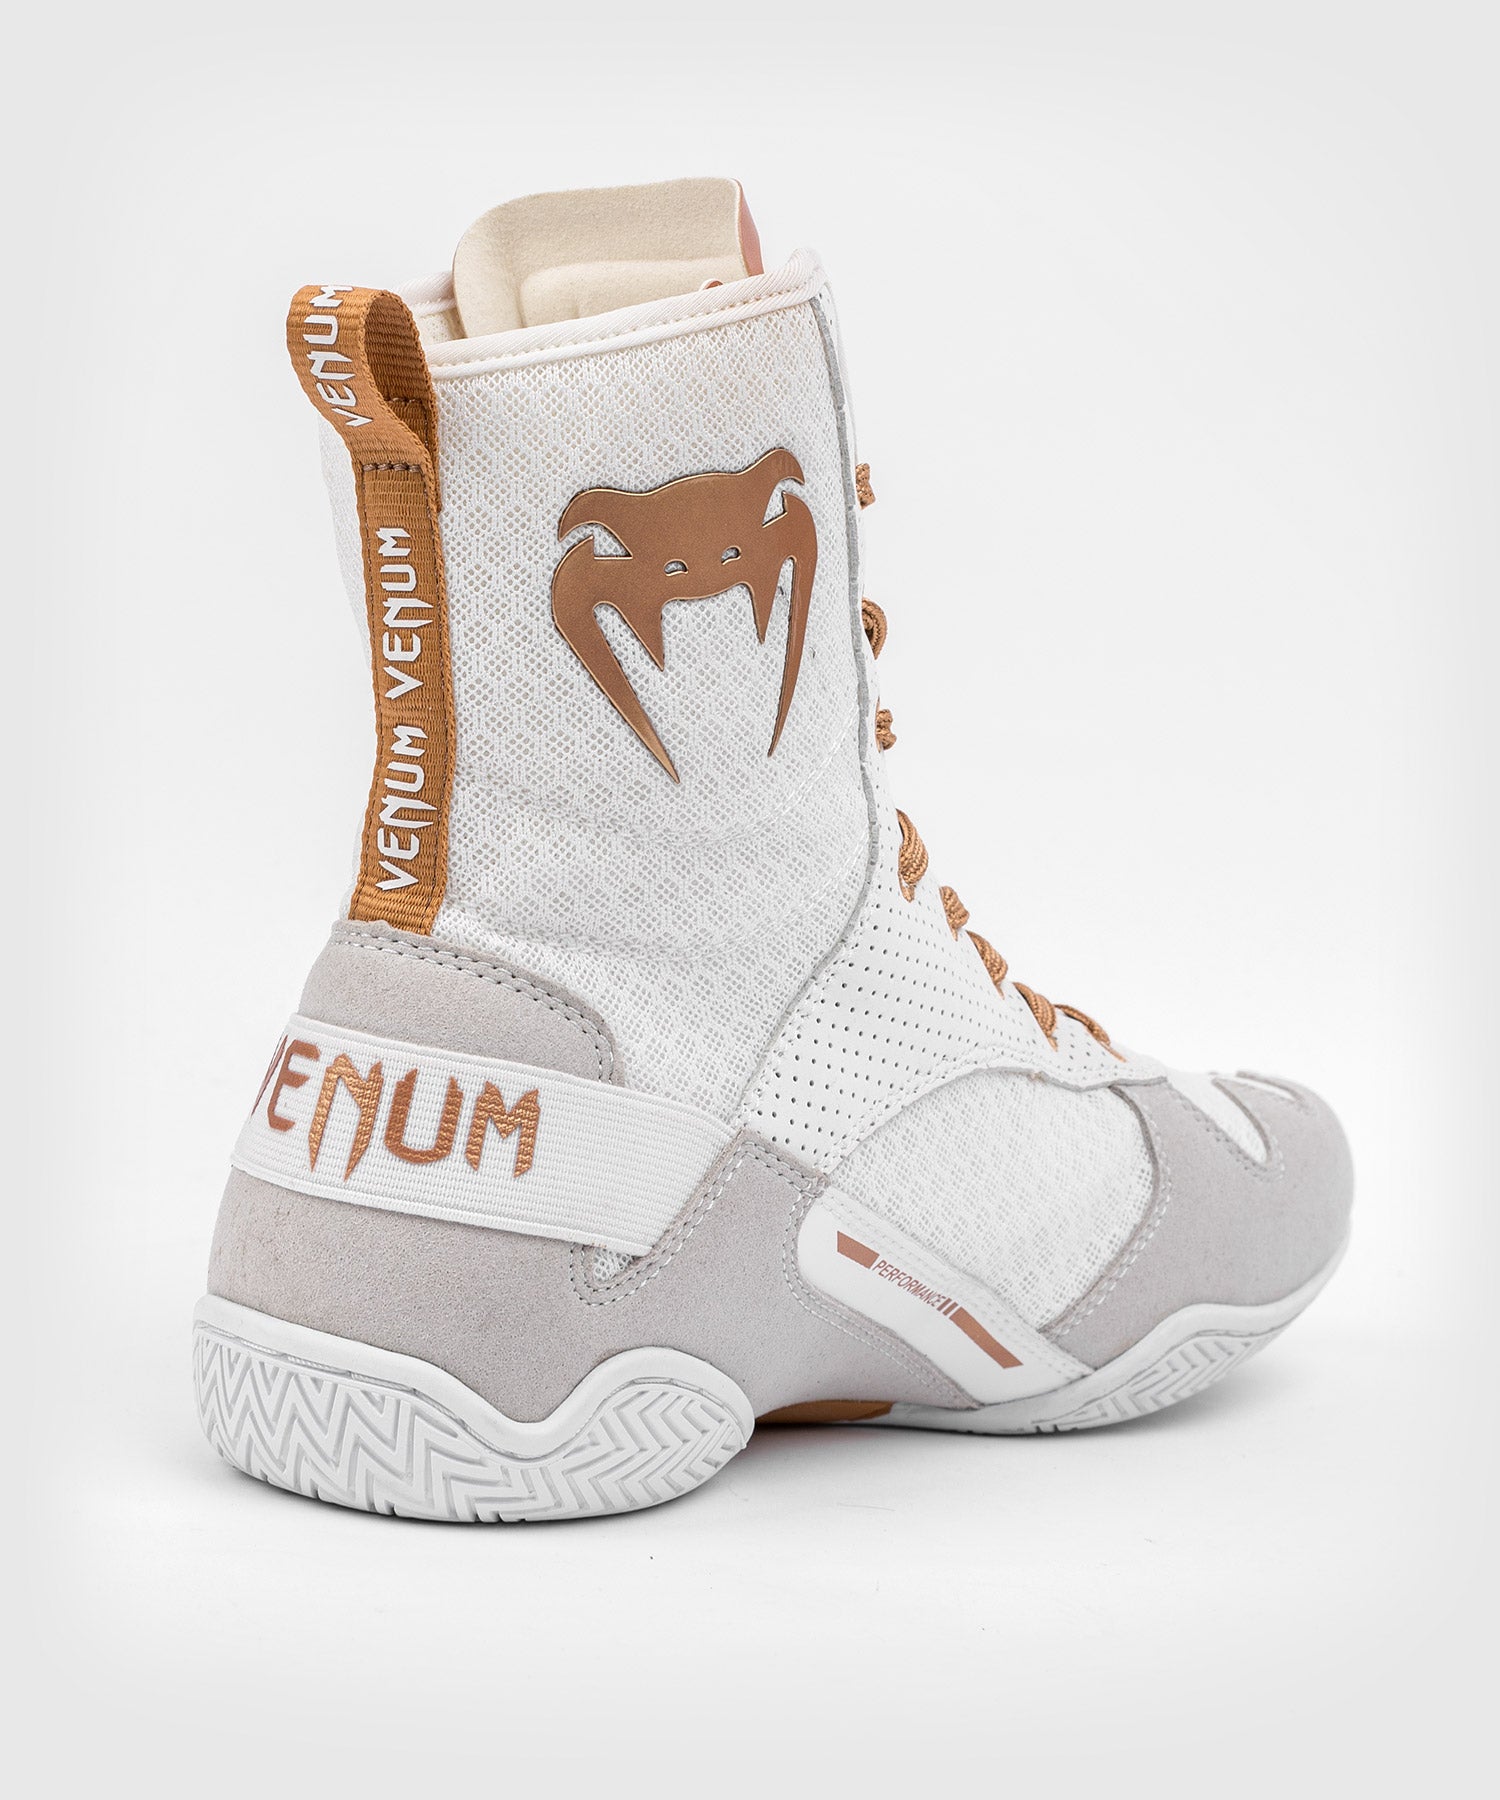 Chaussures de boxe Venum Elite blanc / or > Livraison Gratuite